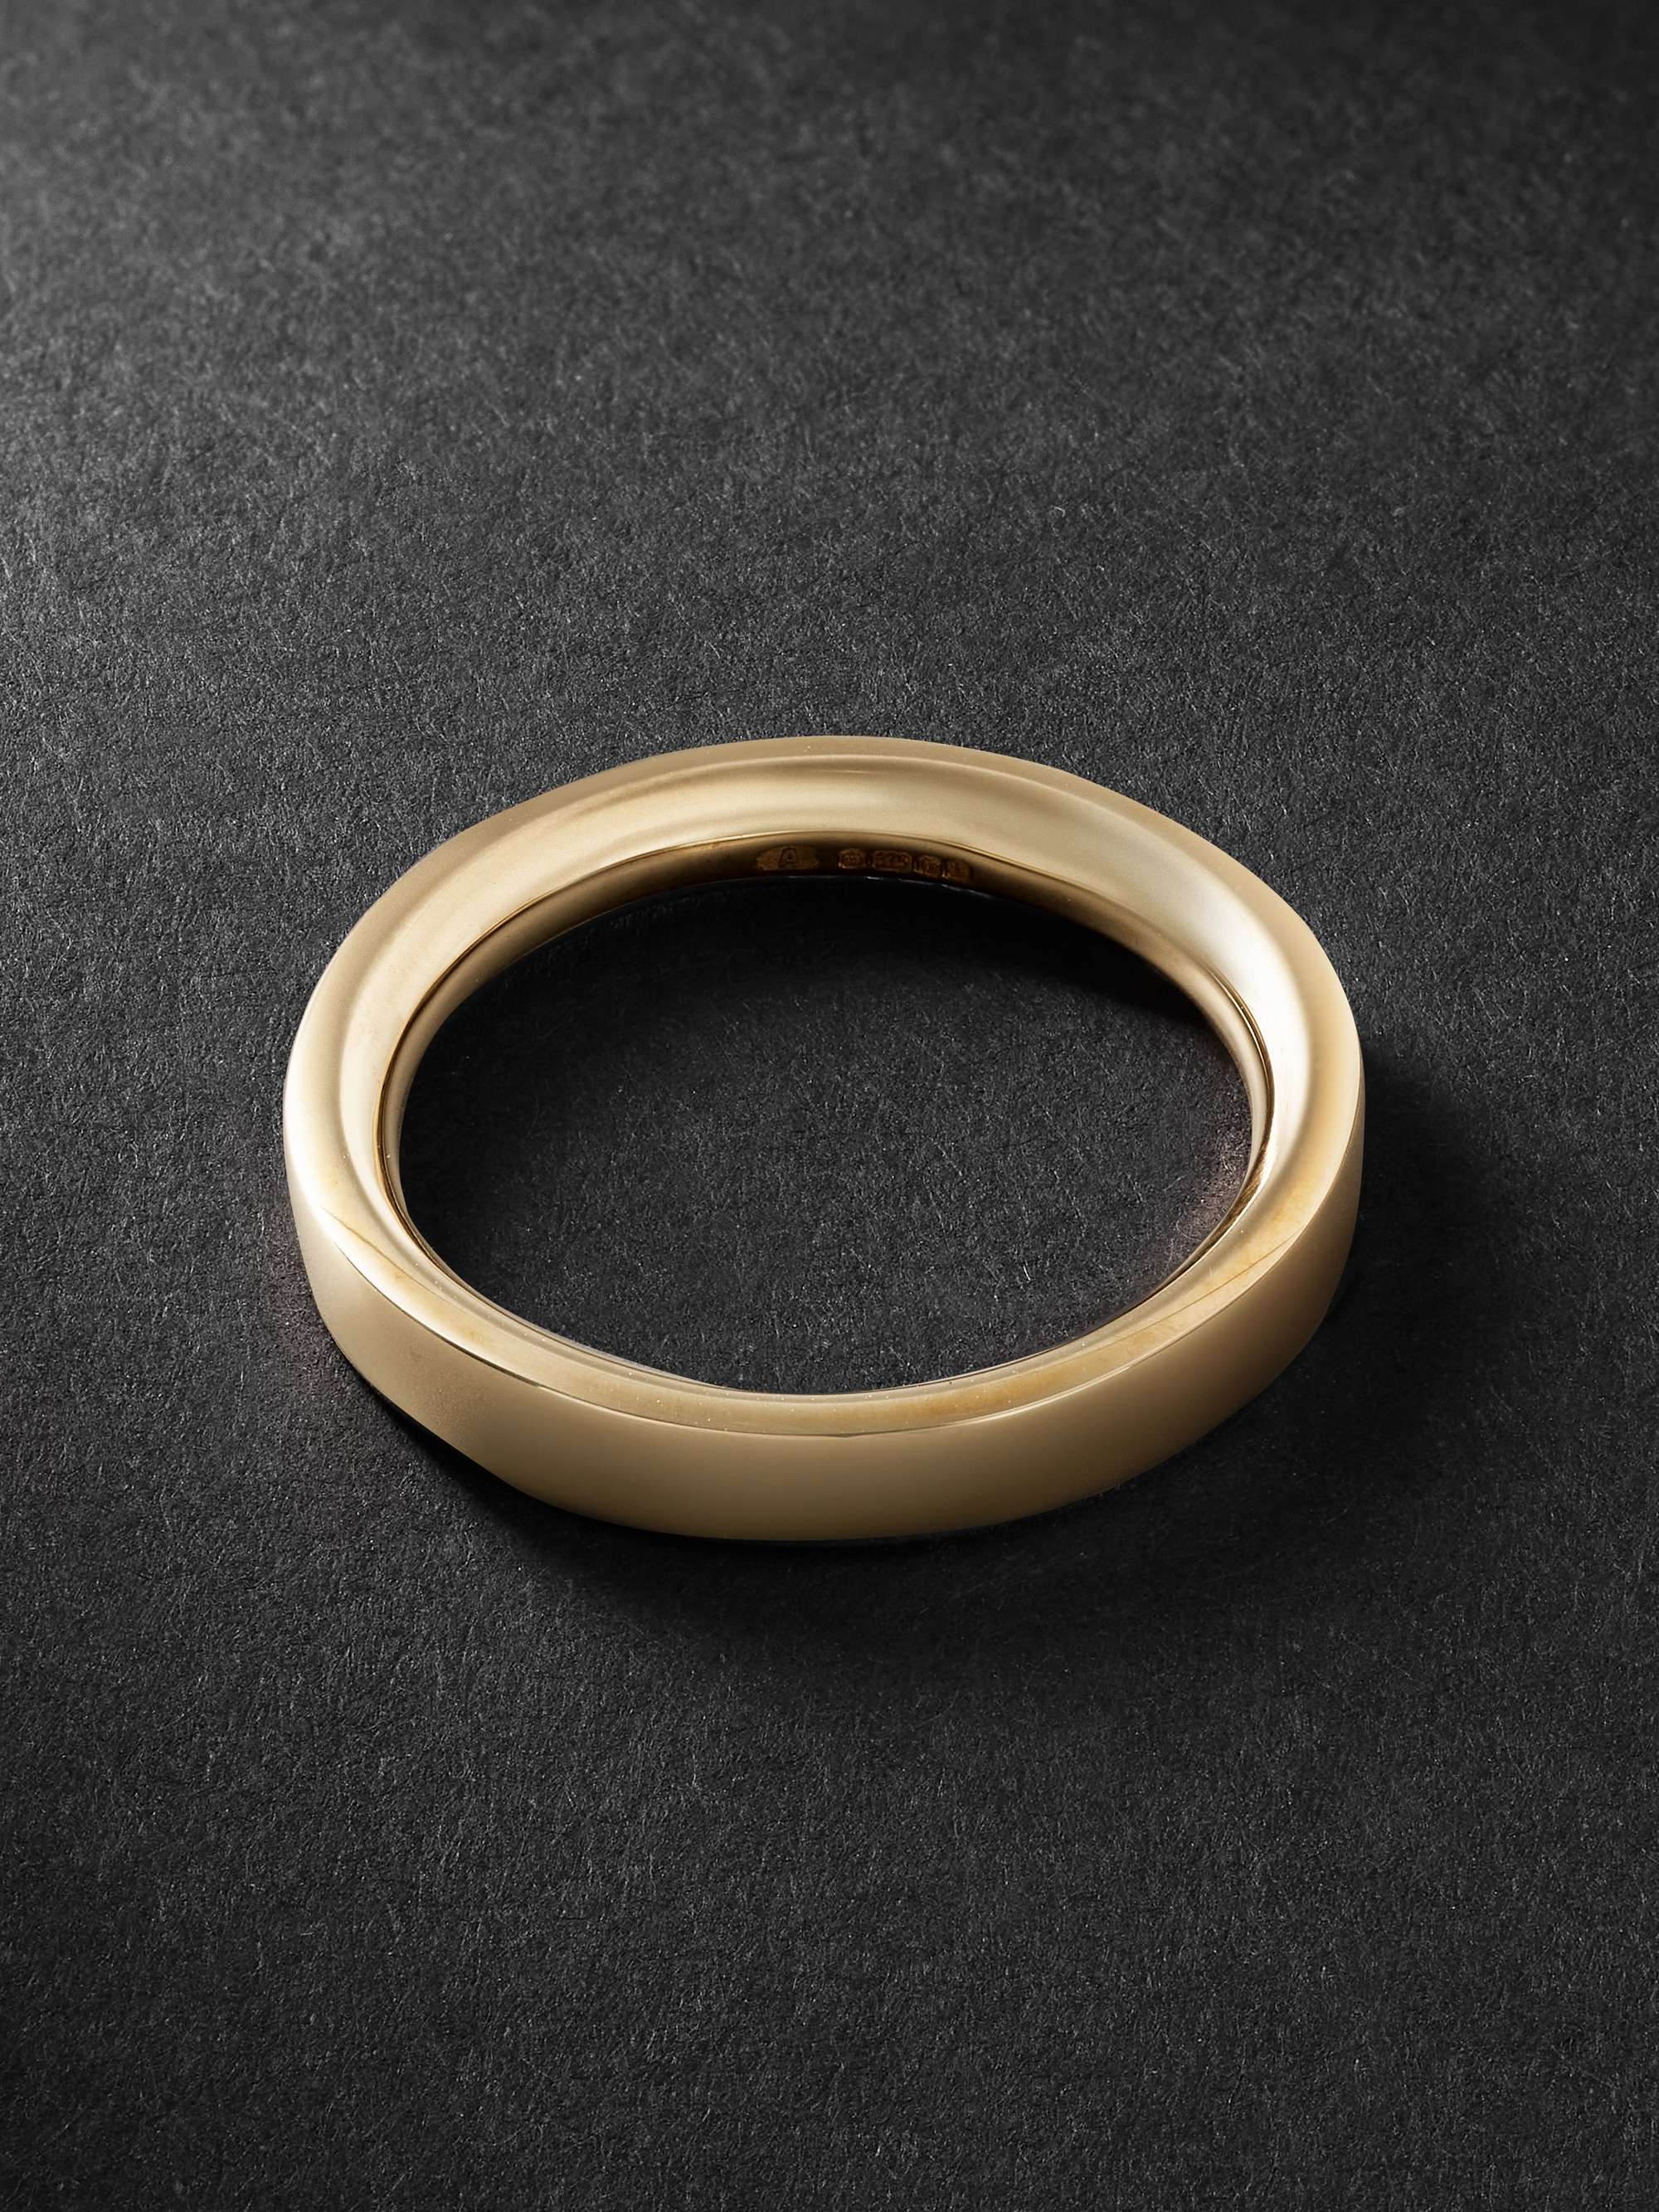 ALICE MADE THIS P4 Bancroft 9-Karat Gold Ring